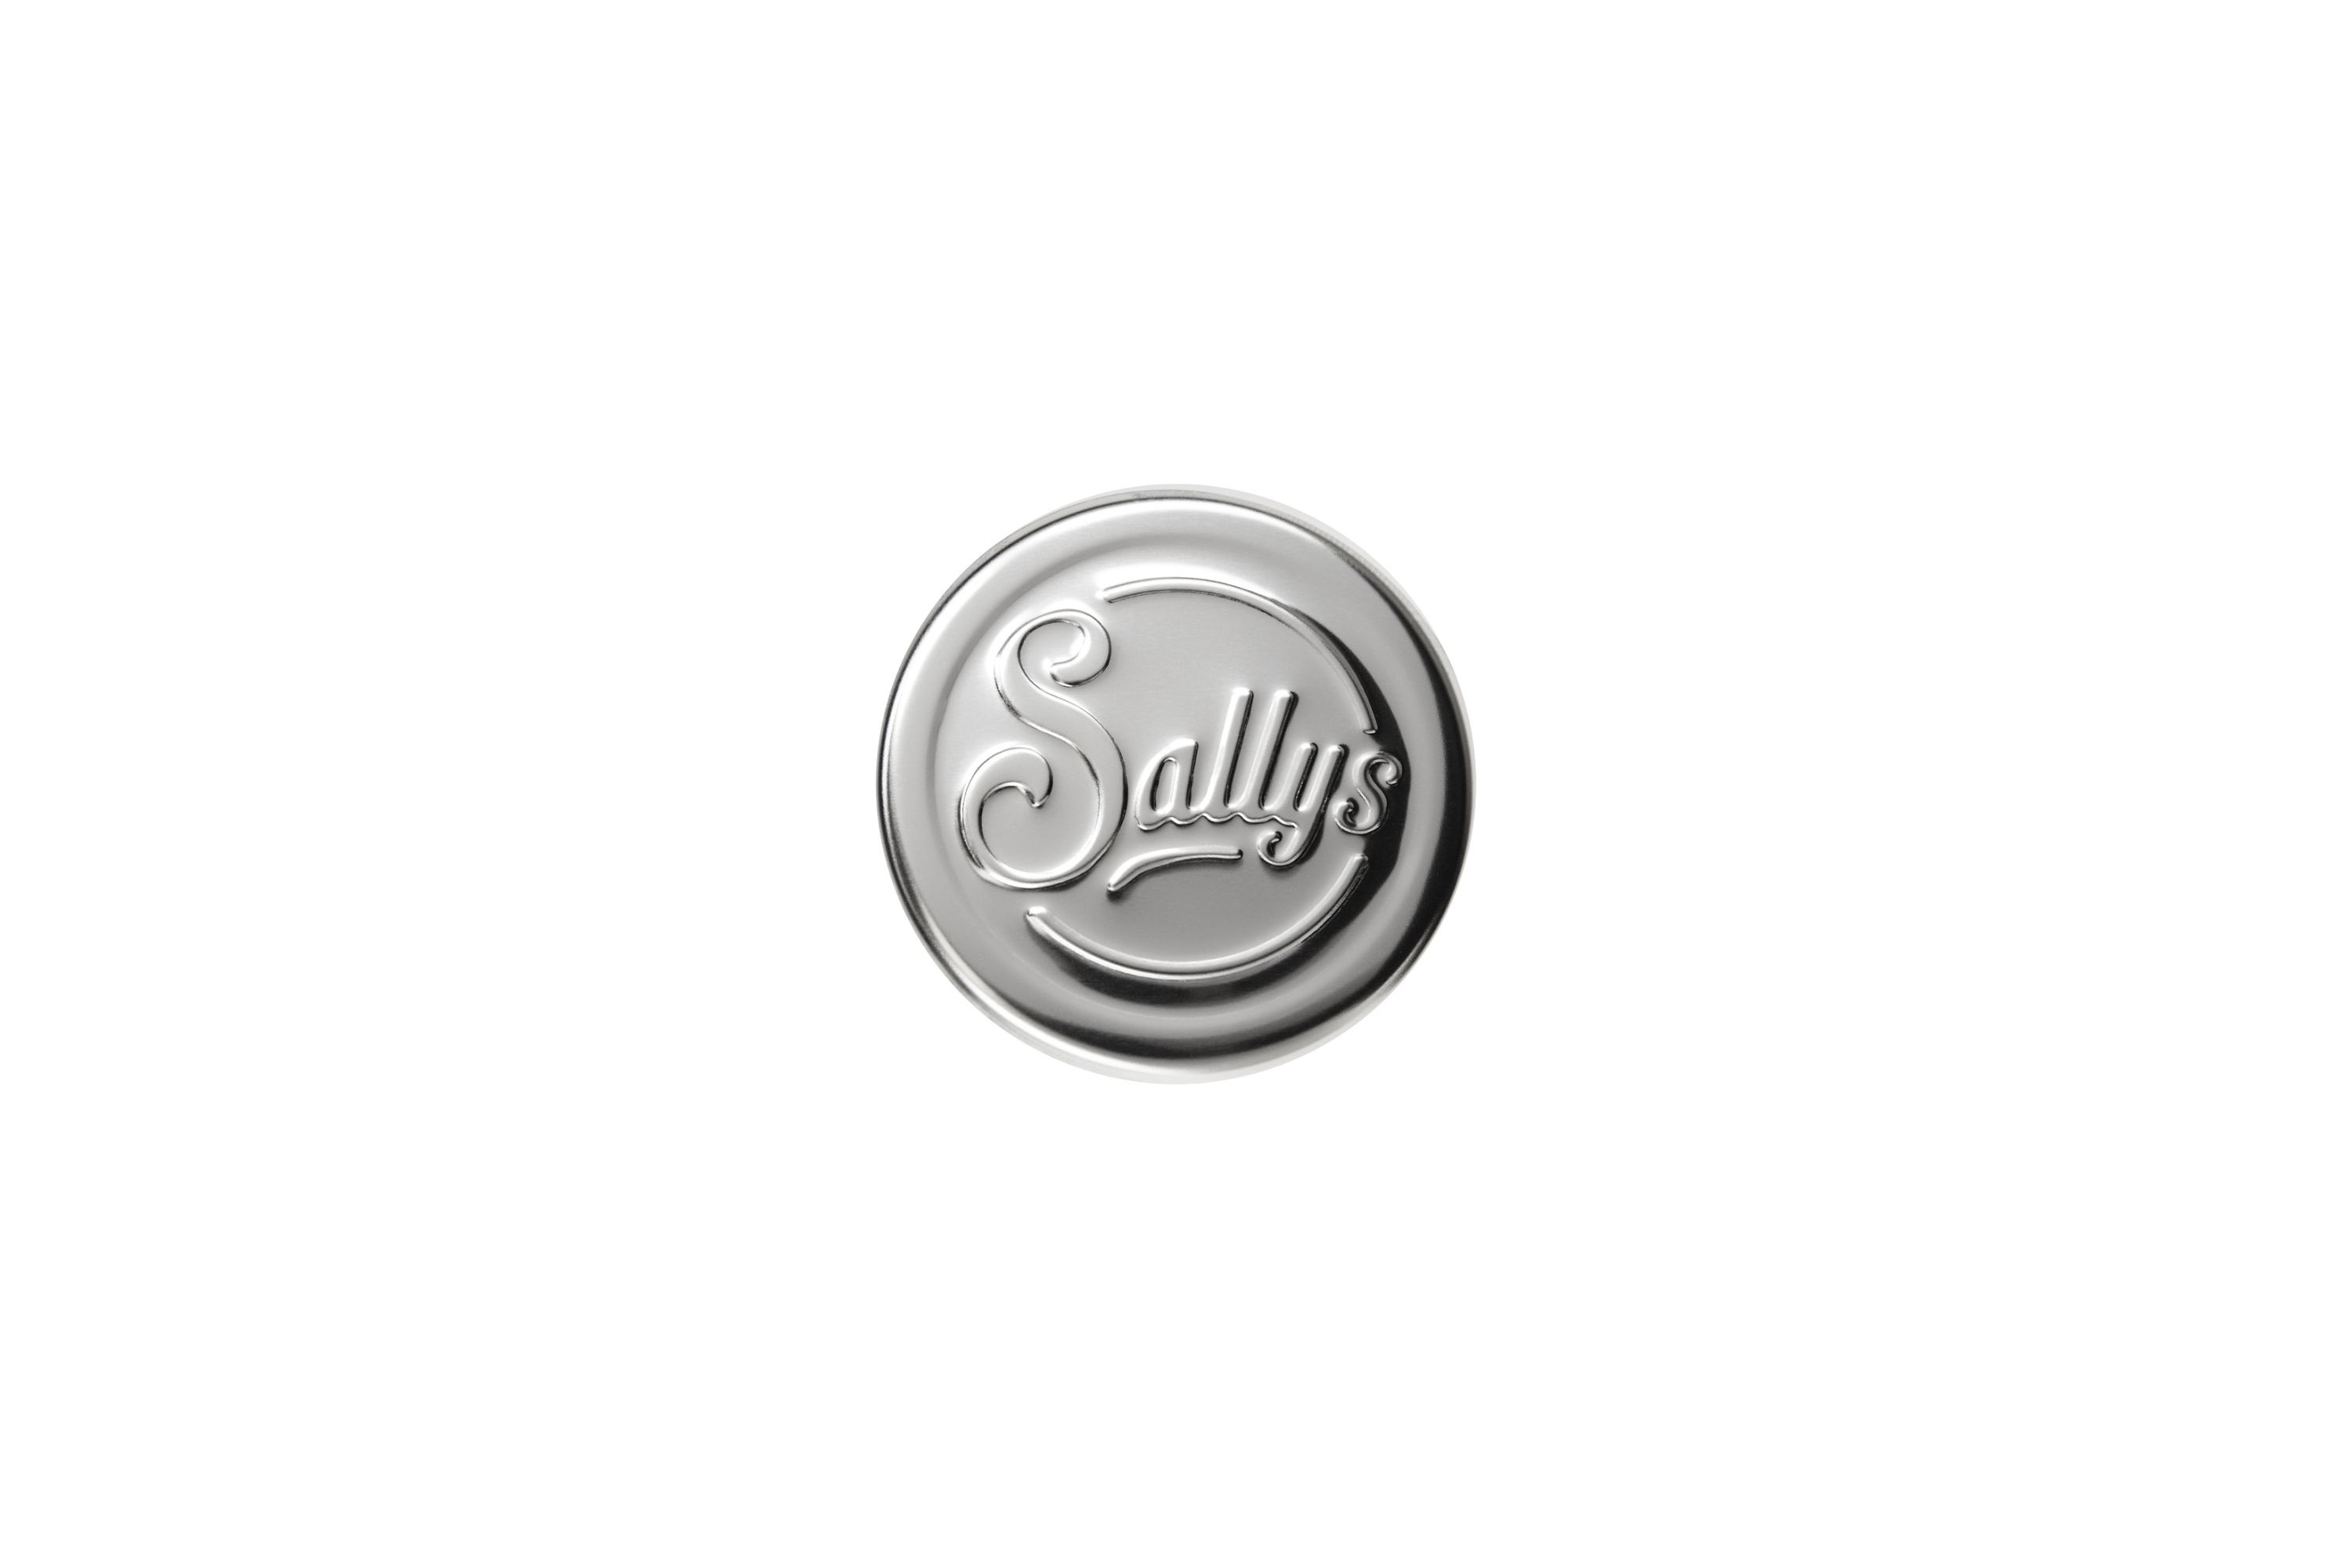 Ein silberner Griff mit Sallys Logo